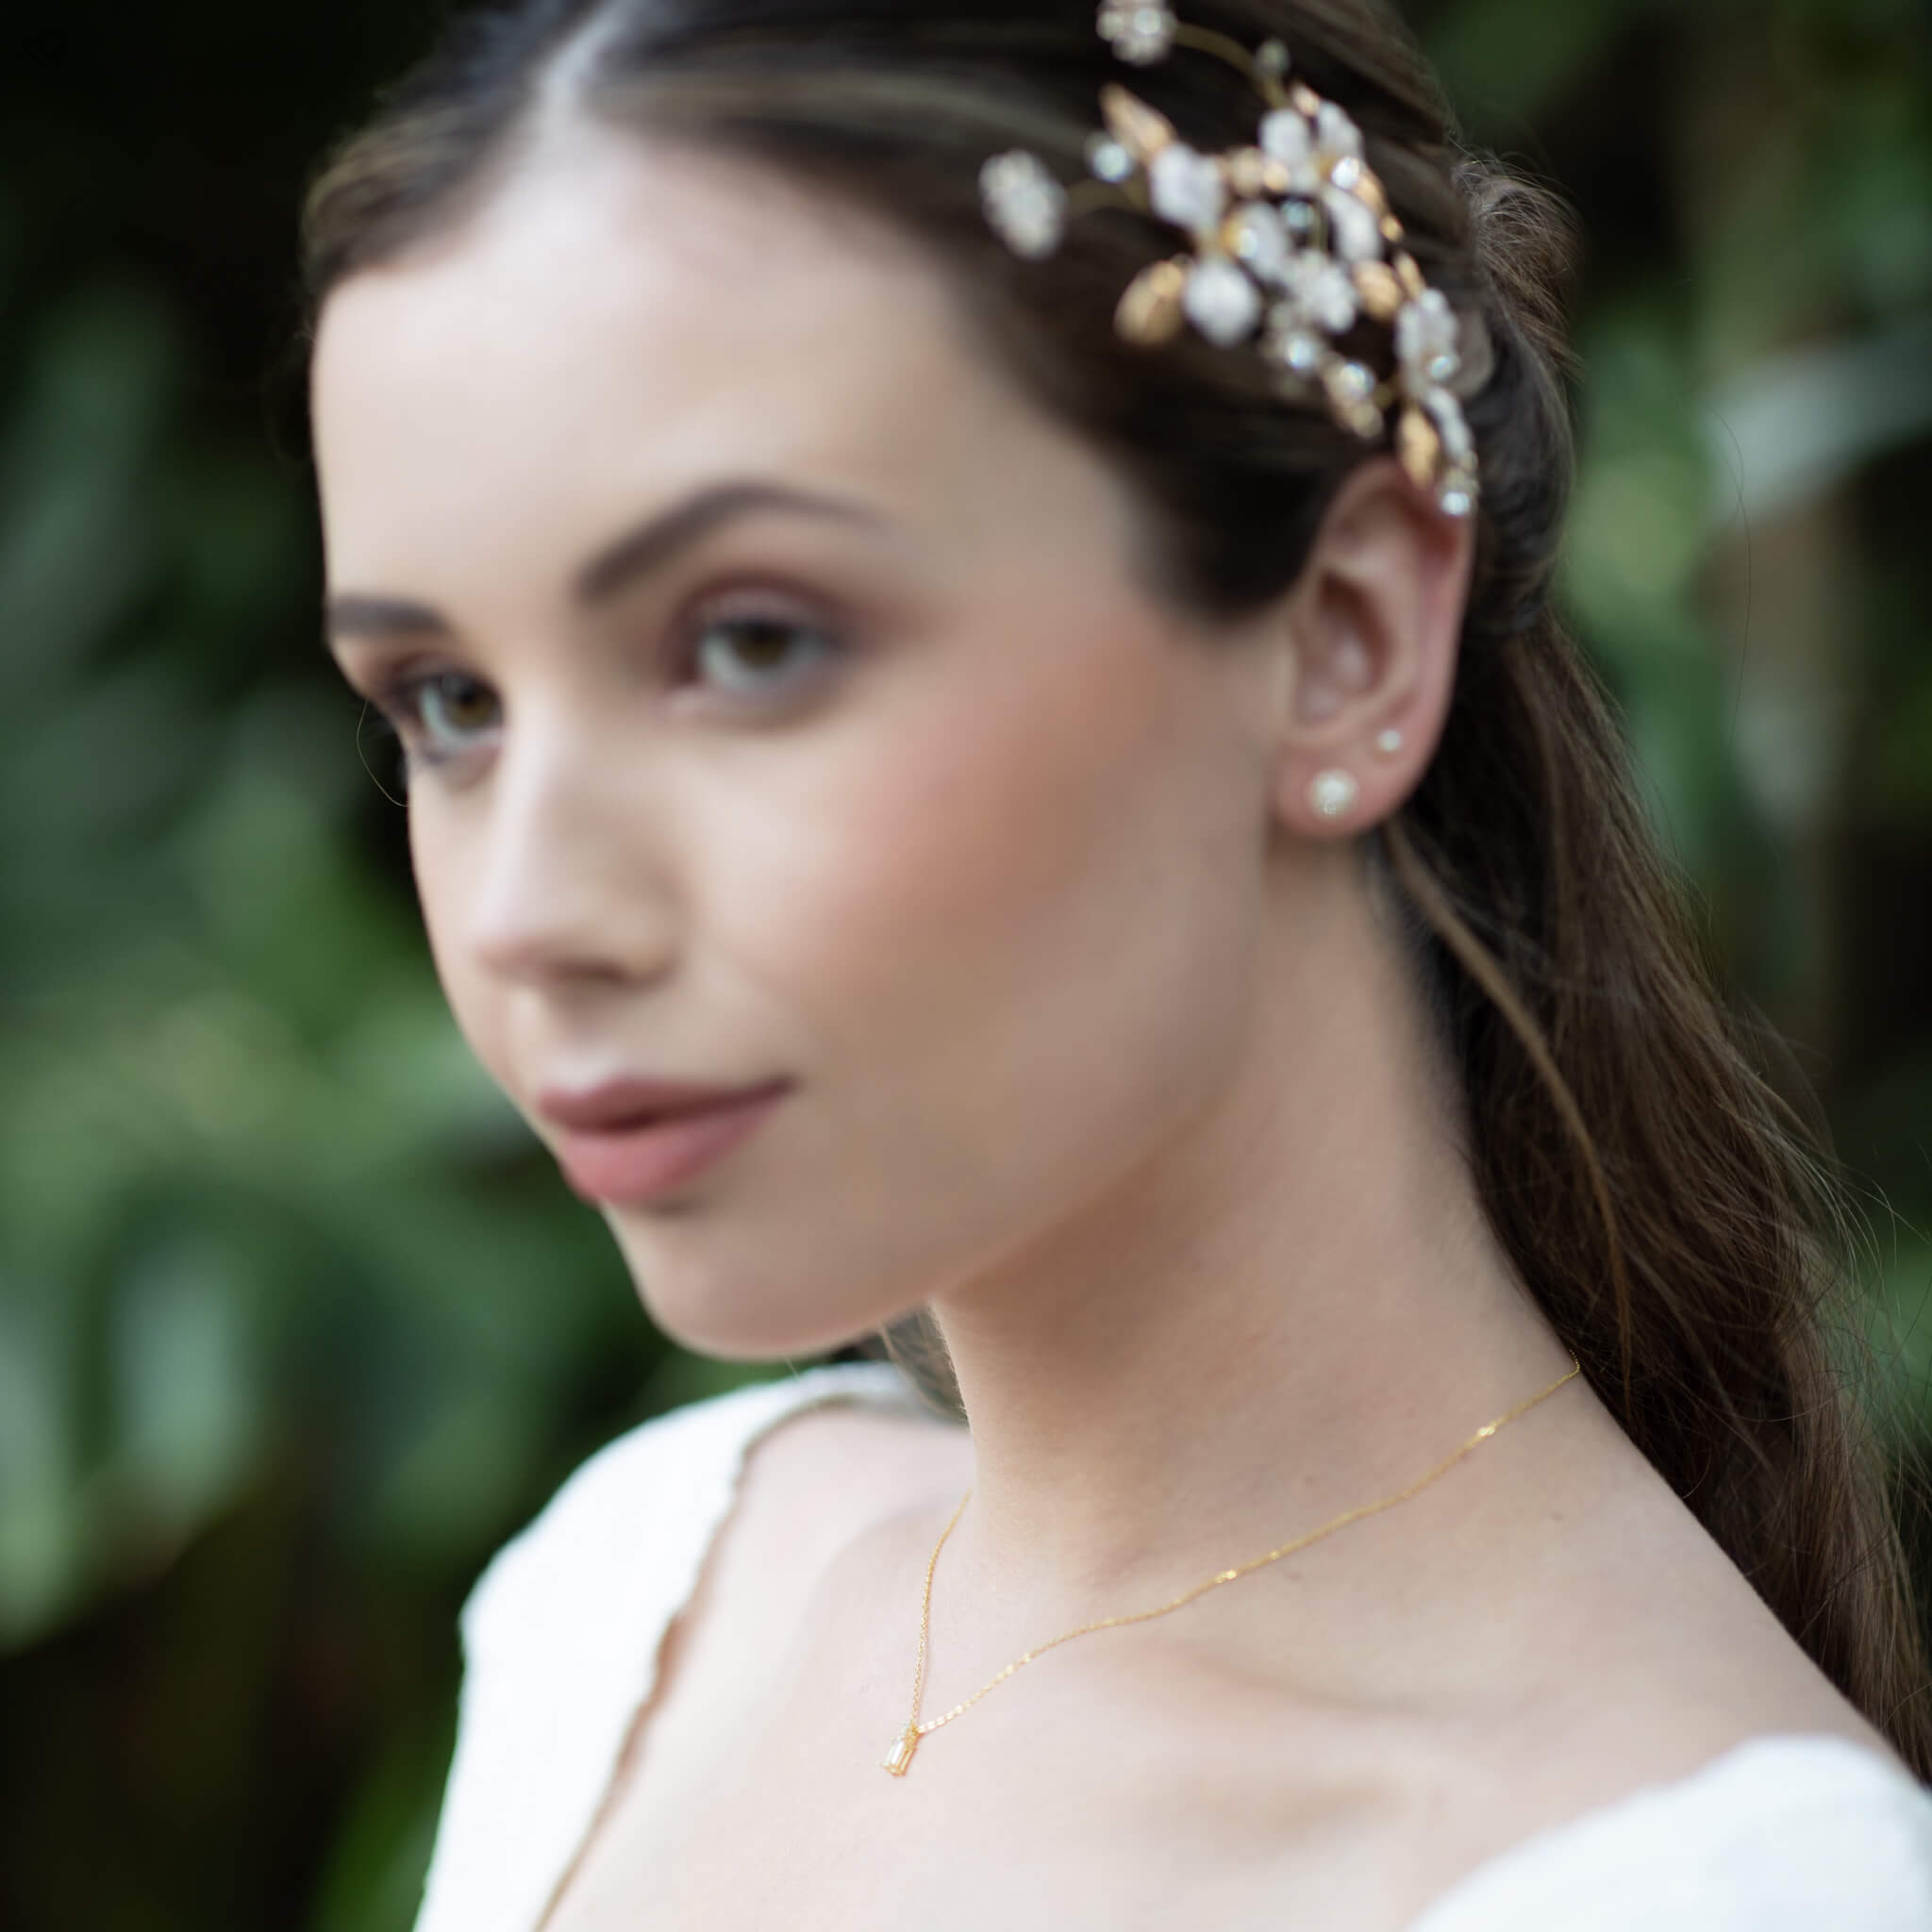 Jules Bridal - Kiara, 14k Gold Plated Crystal Necklace